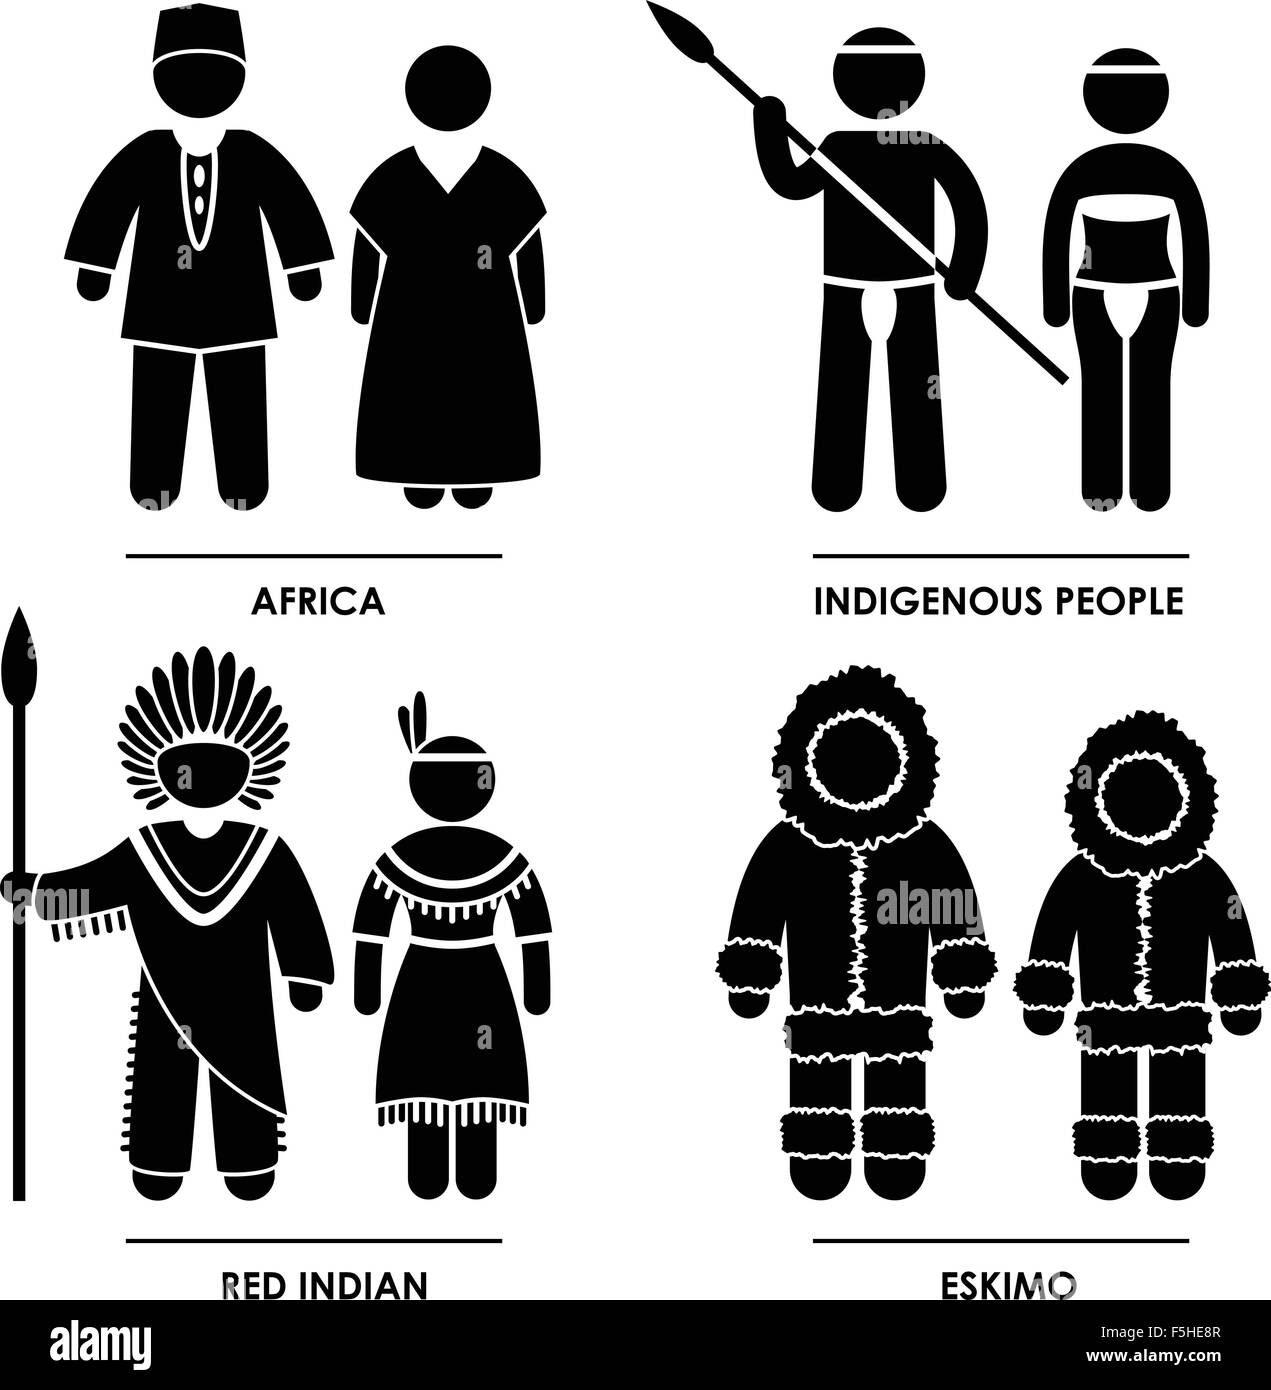 Afrika Indianer Eskimo Mann Frau nationalen Tracht Kleid Kleidung Symbol Symbol Zeichen Piktogramm Stock Vektor